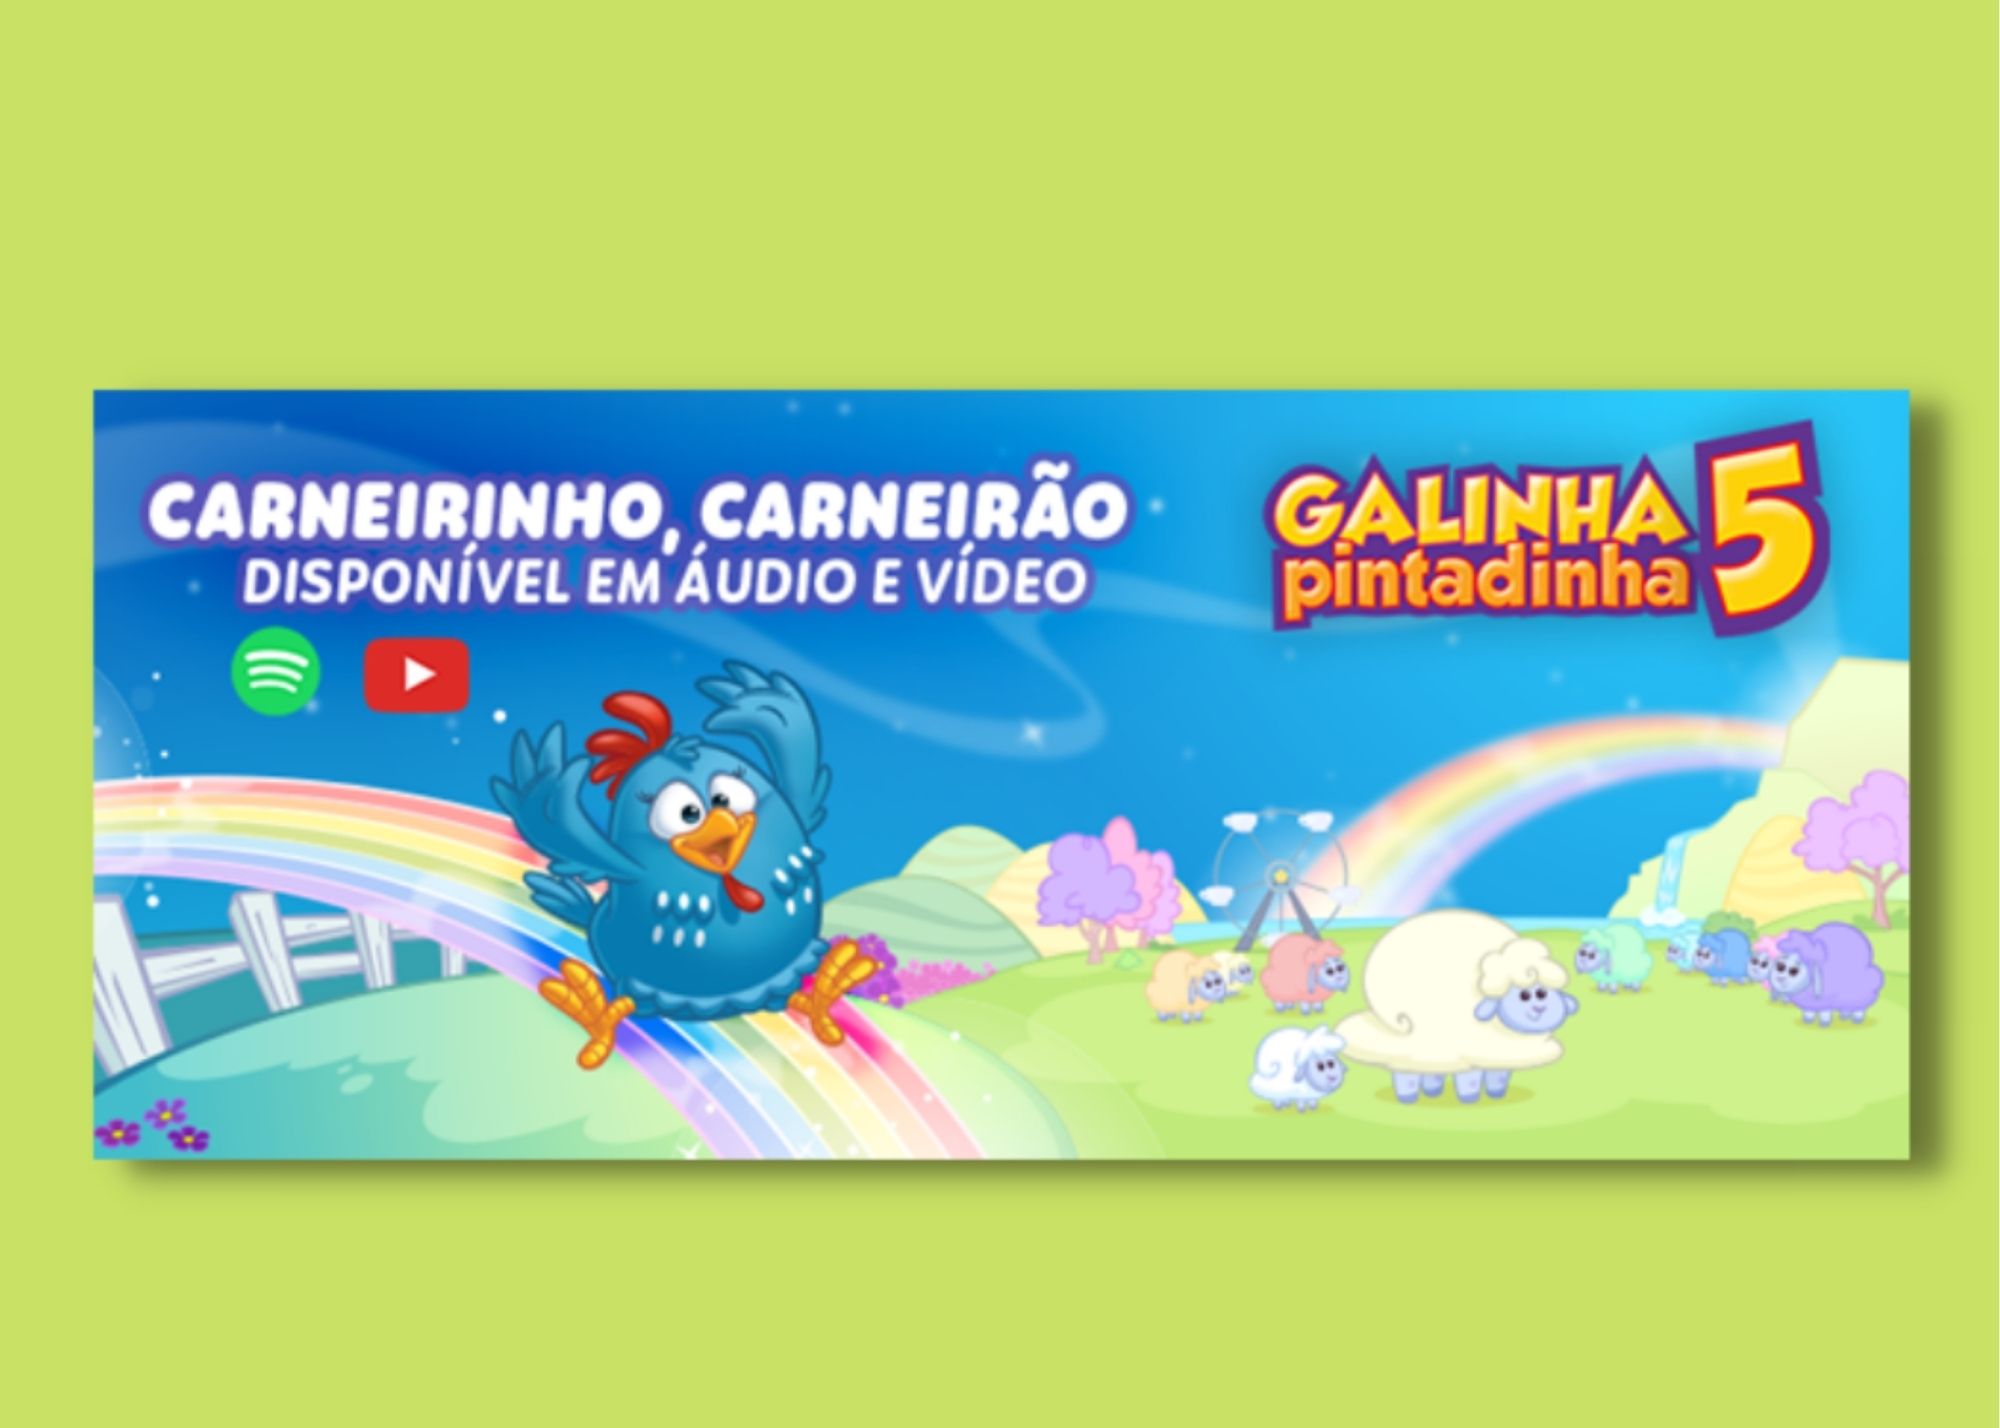 GALINHA PINTADINHA chega a 1 BILHÃO DE VIEWS! - VÍDEO COMPLETO 